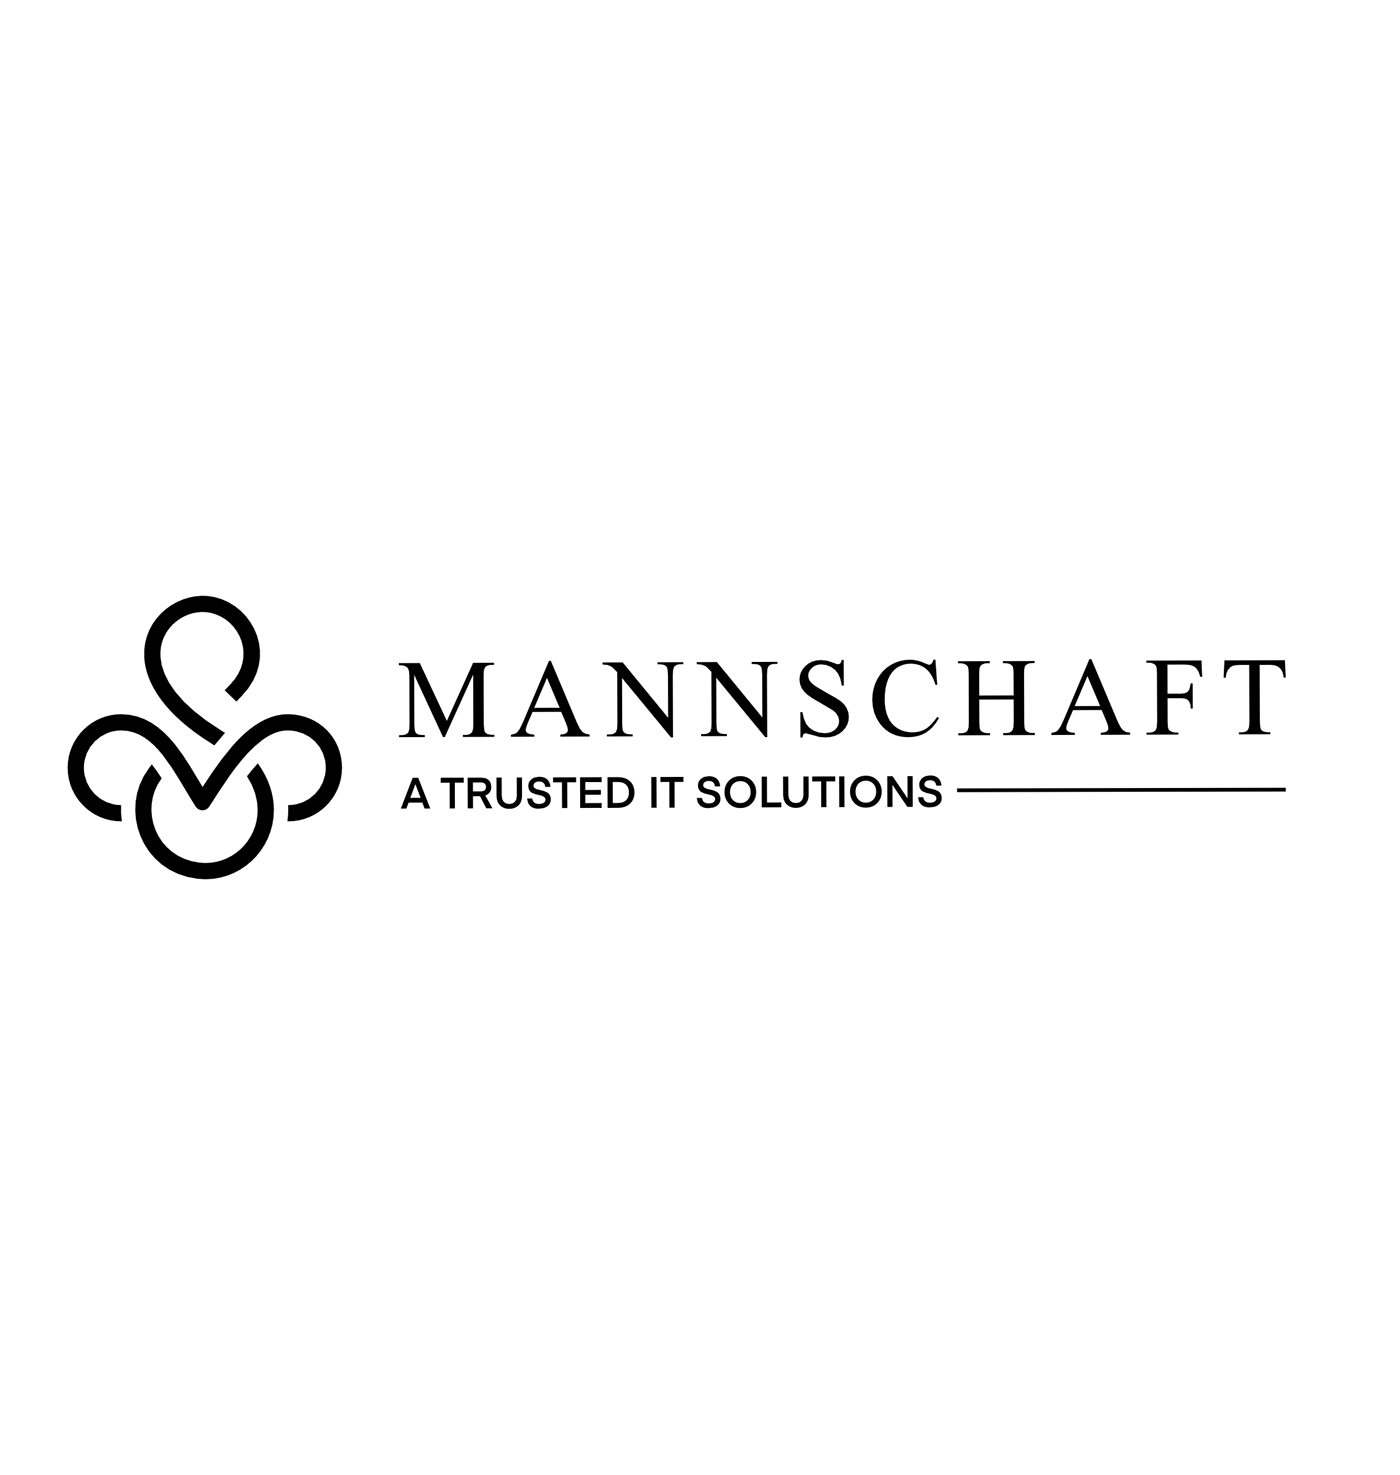 brand identity business card logo mannschaft